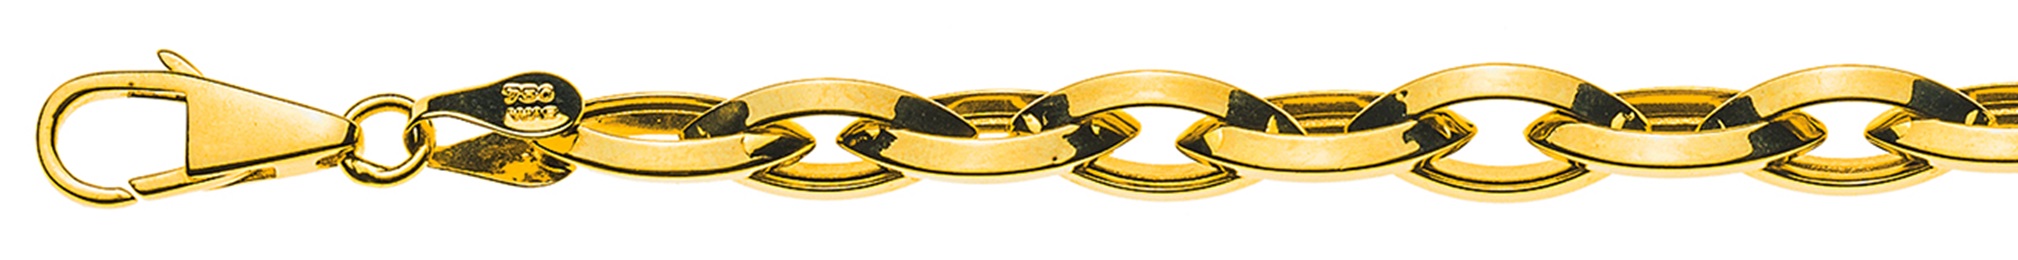 AURONOS Prestige Halskette Gelbgold 18K Navettekette Halbmassiv Messerschliff 45cm 6.6mm